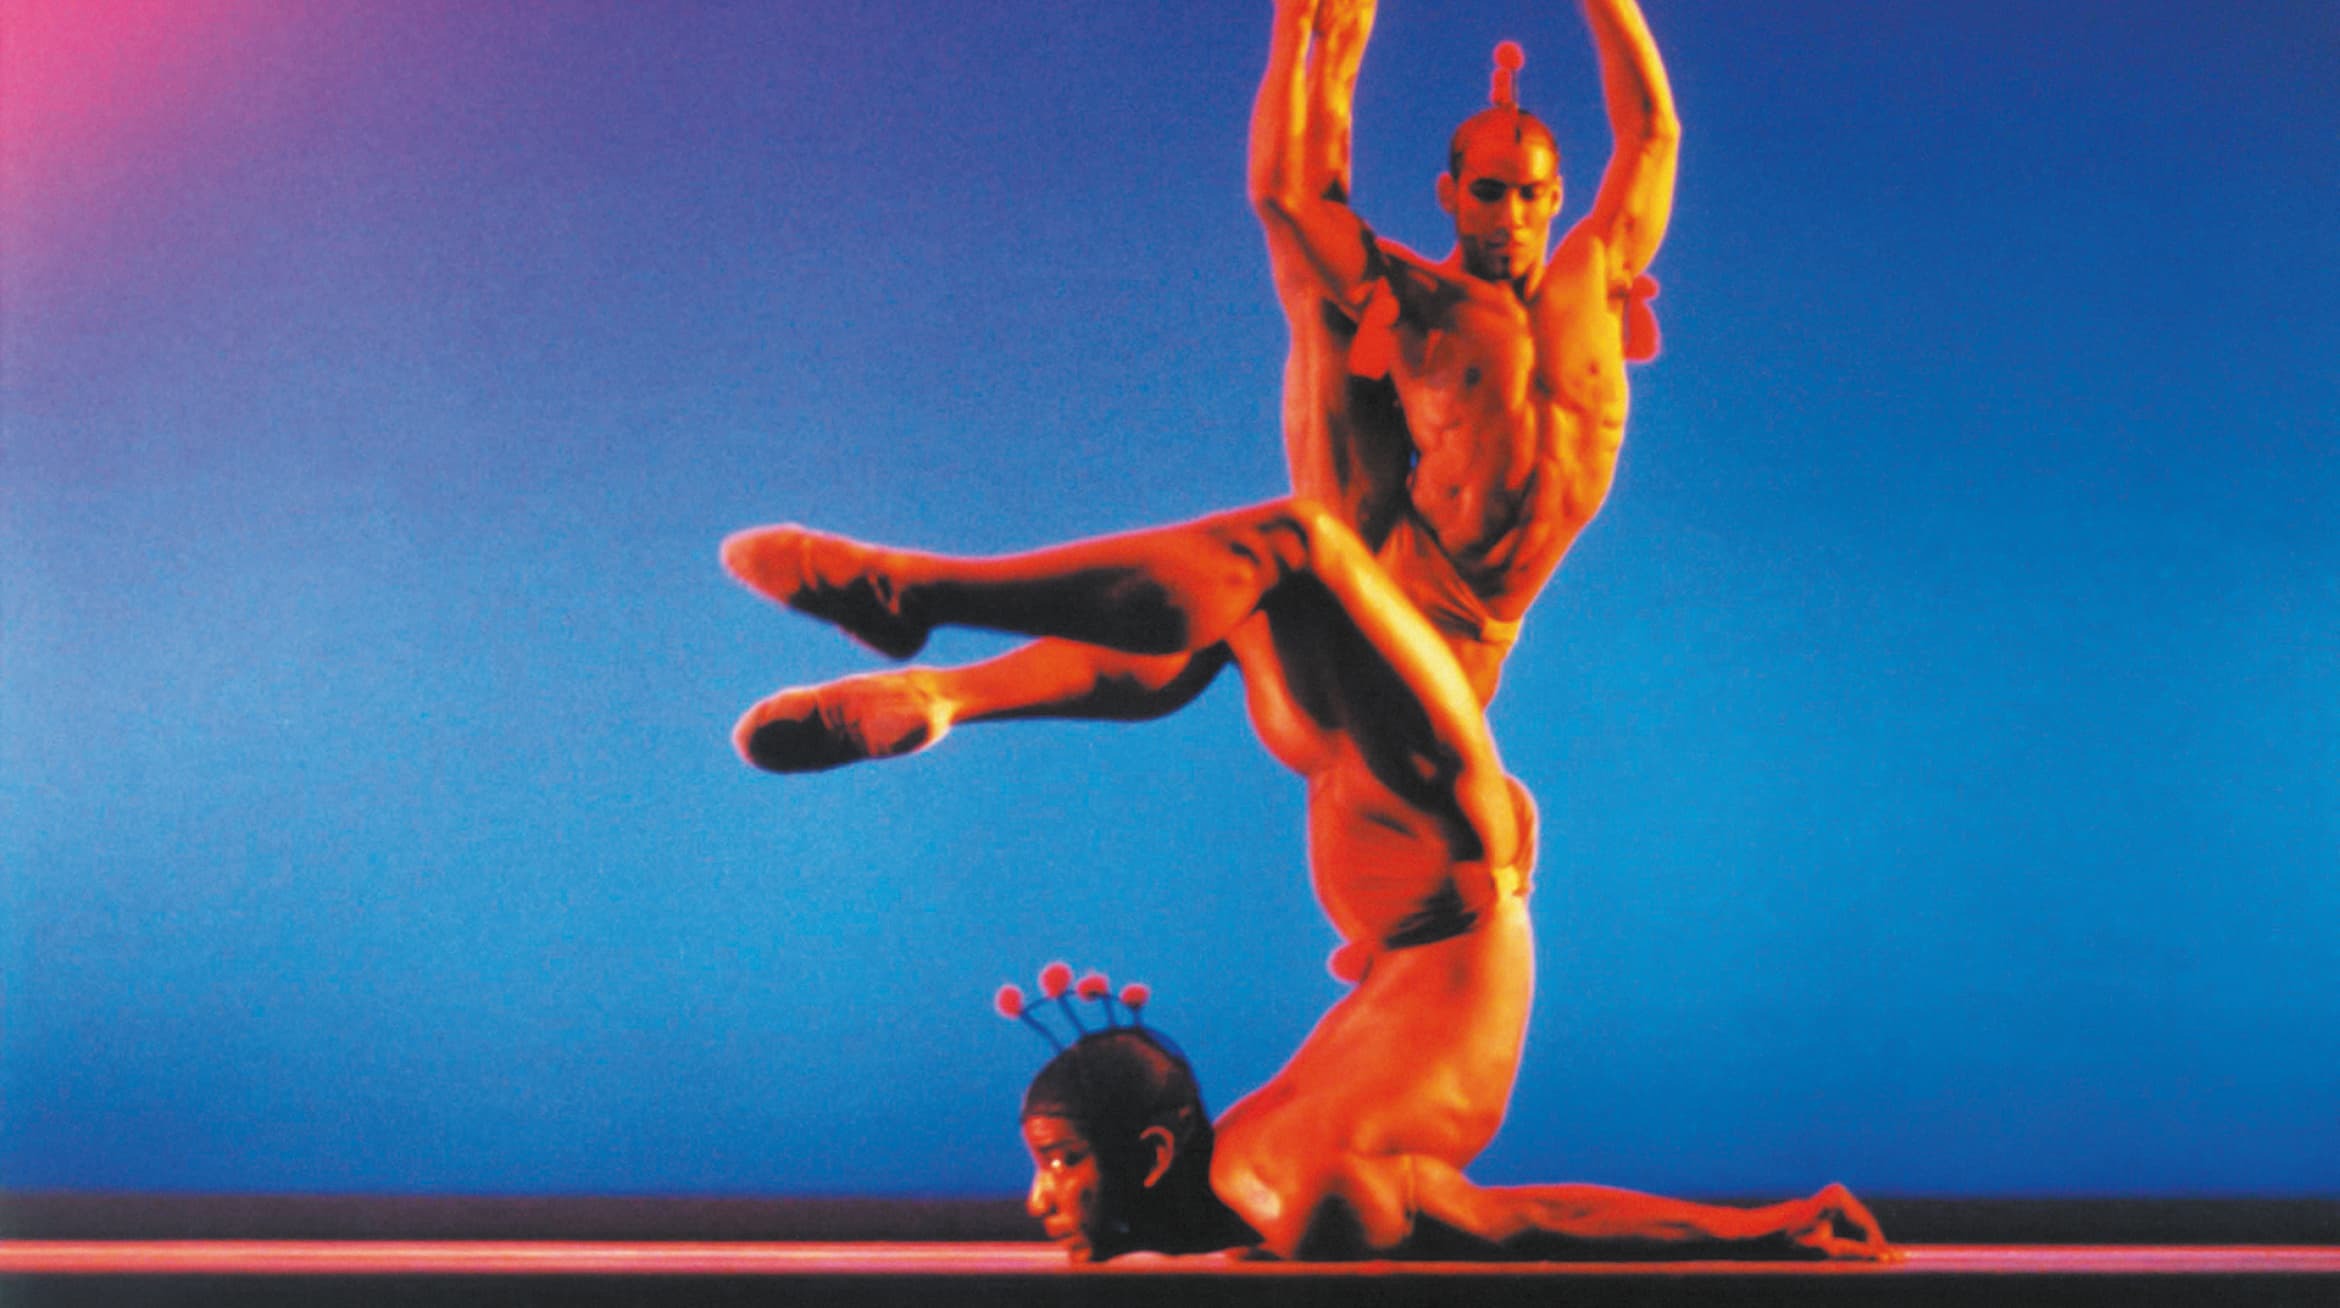 Foto von zwei Akrobaten auf einer Bühne vor blauem Hintergund.Die Personen sind sehr muskulös und befinden sich in komplexen Posen.